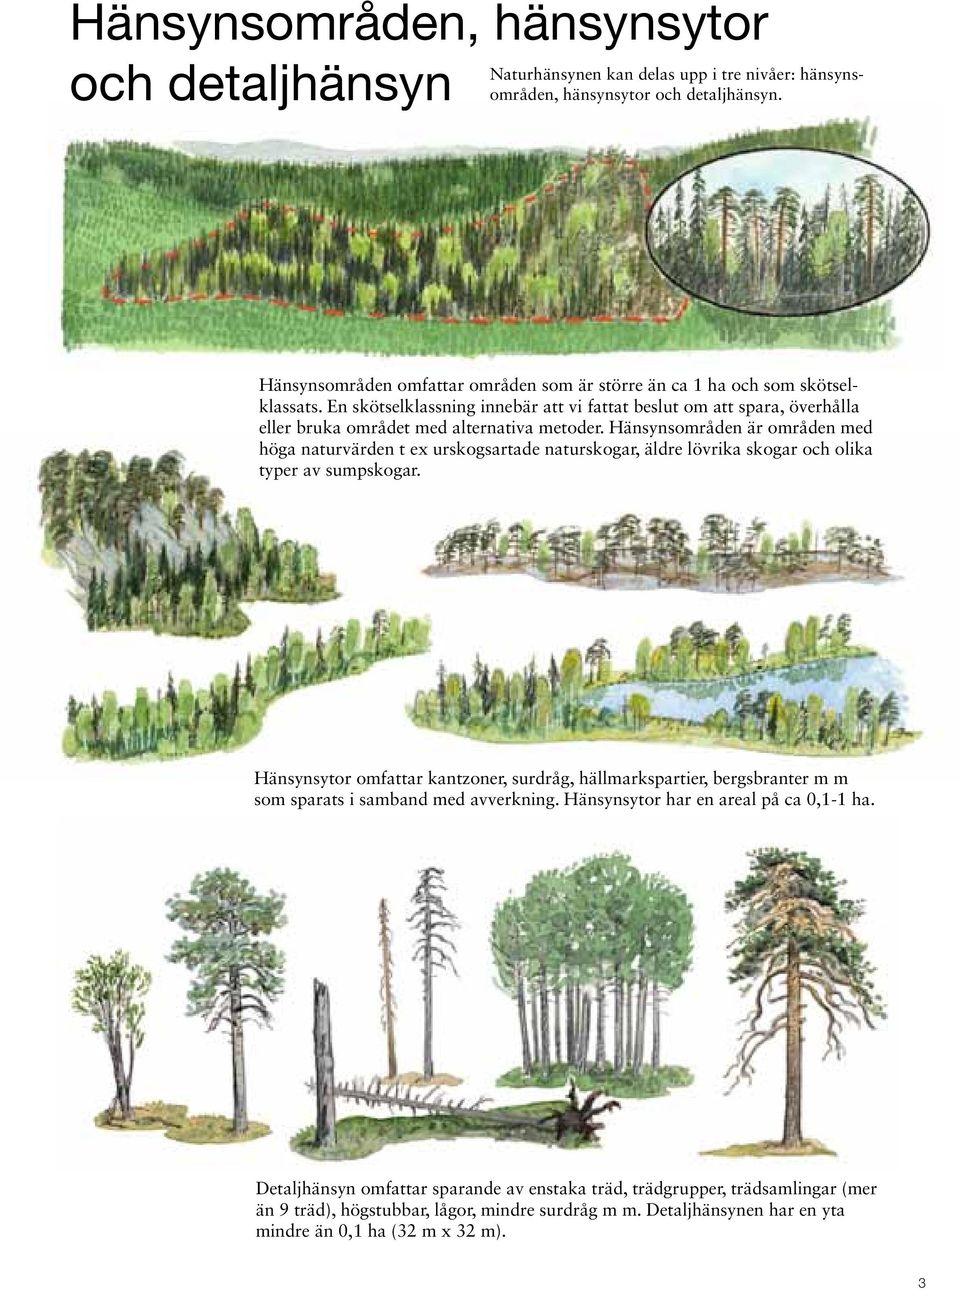 Hänsynsområden är områden med höga naturvärden t ex urskogsartade naturskogar, äldre lövrika skogar och olika typer av sumpskogar.